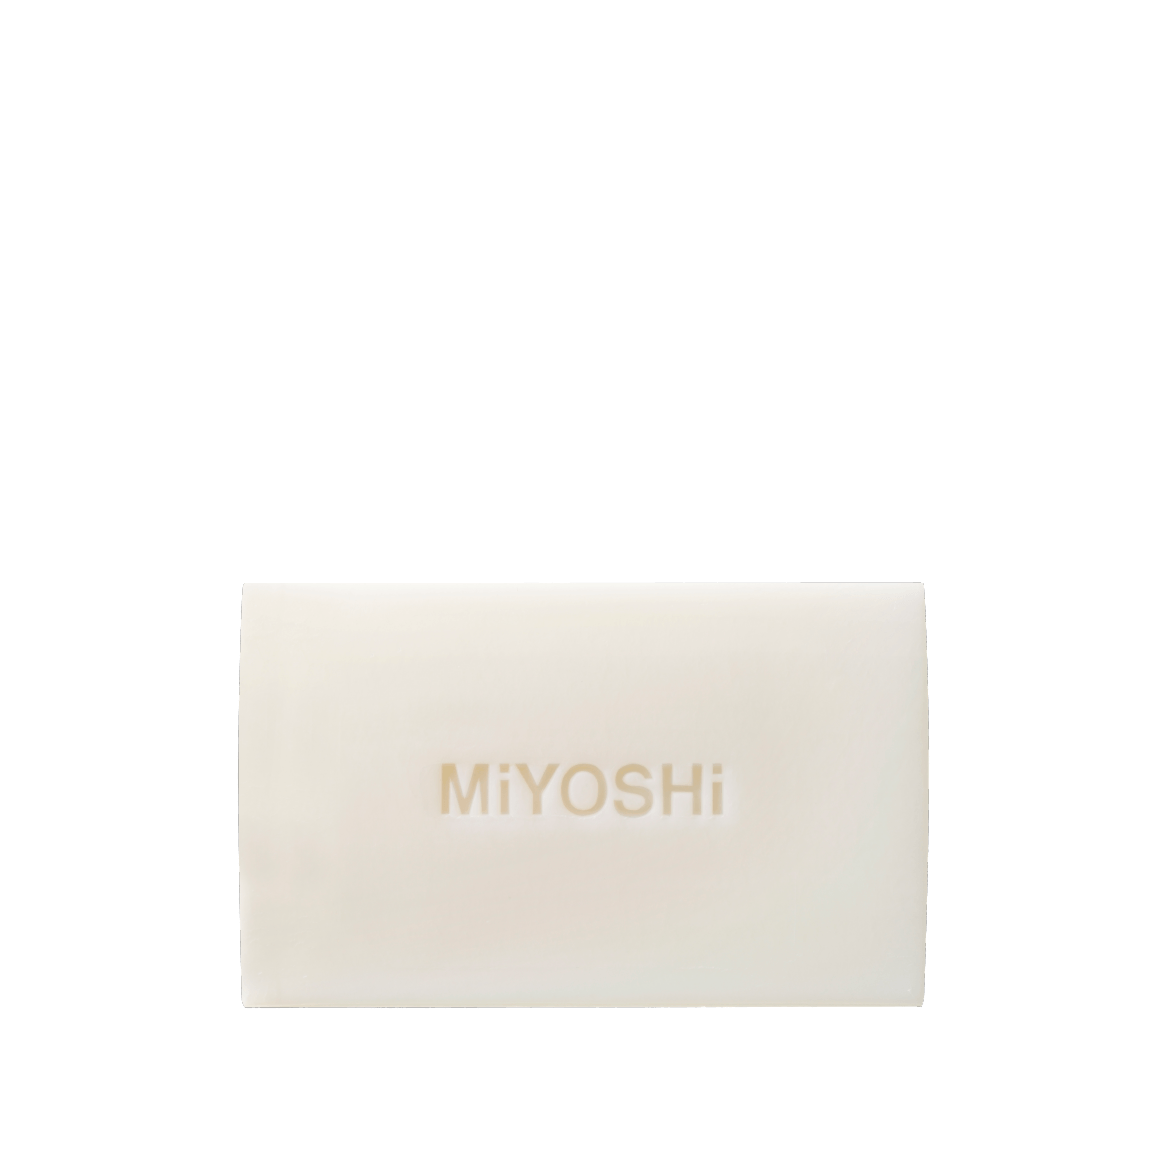 無添加 白いせっけん<br> - MIYOSHI SOAP CORPORATION